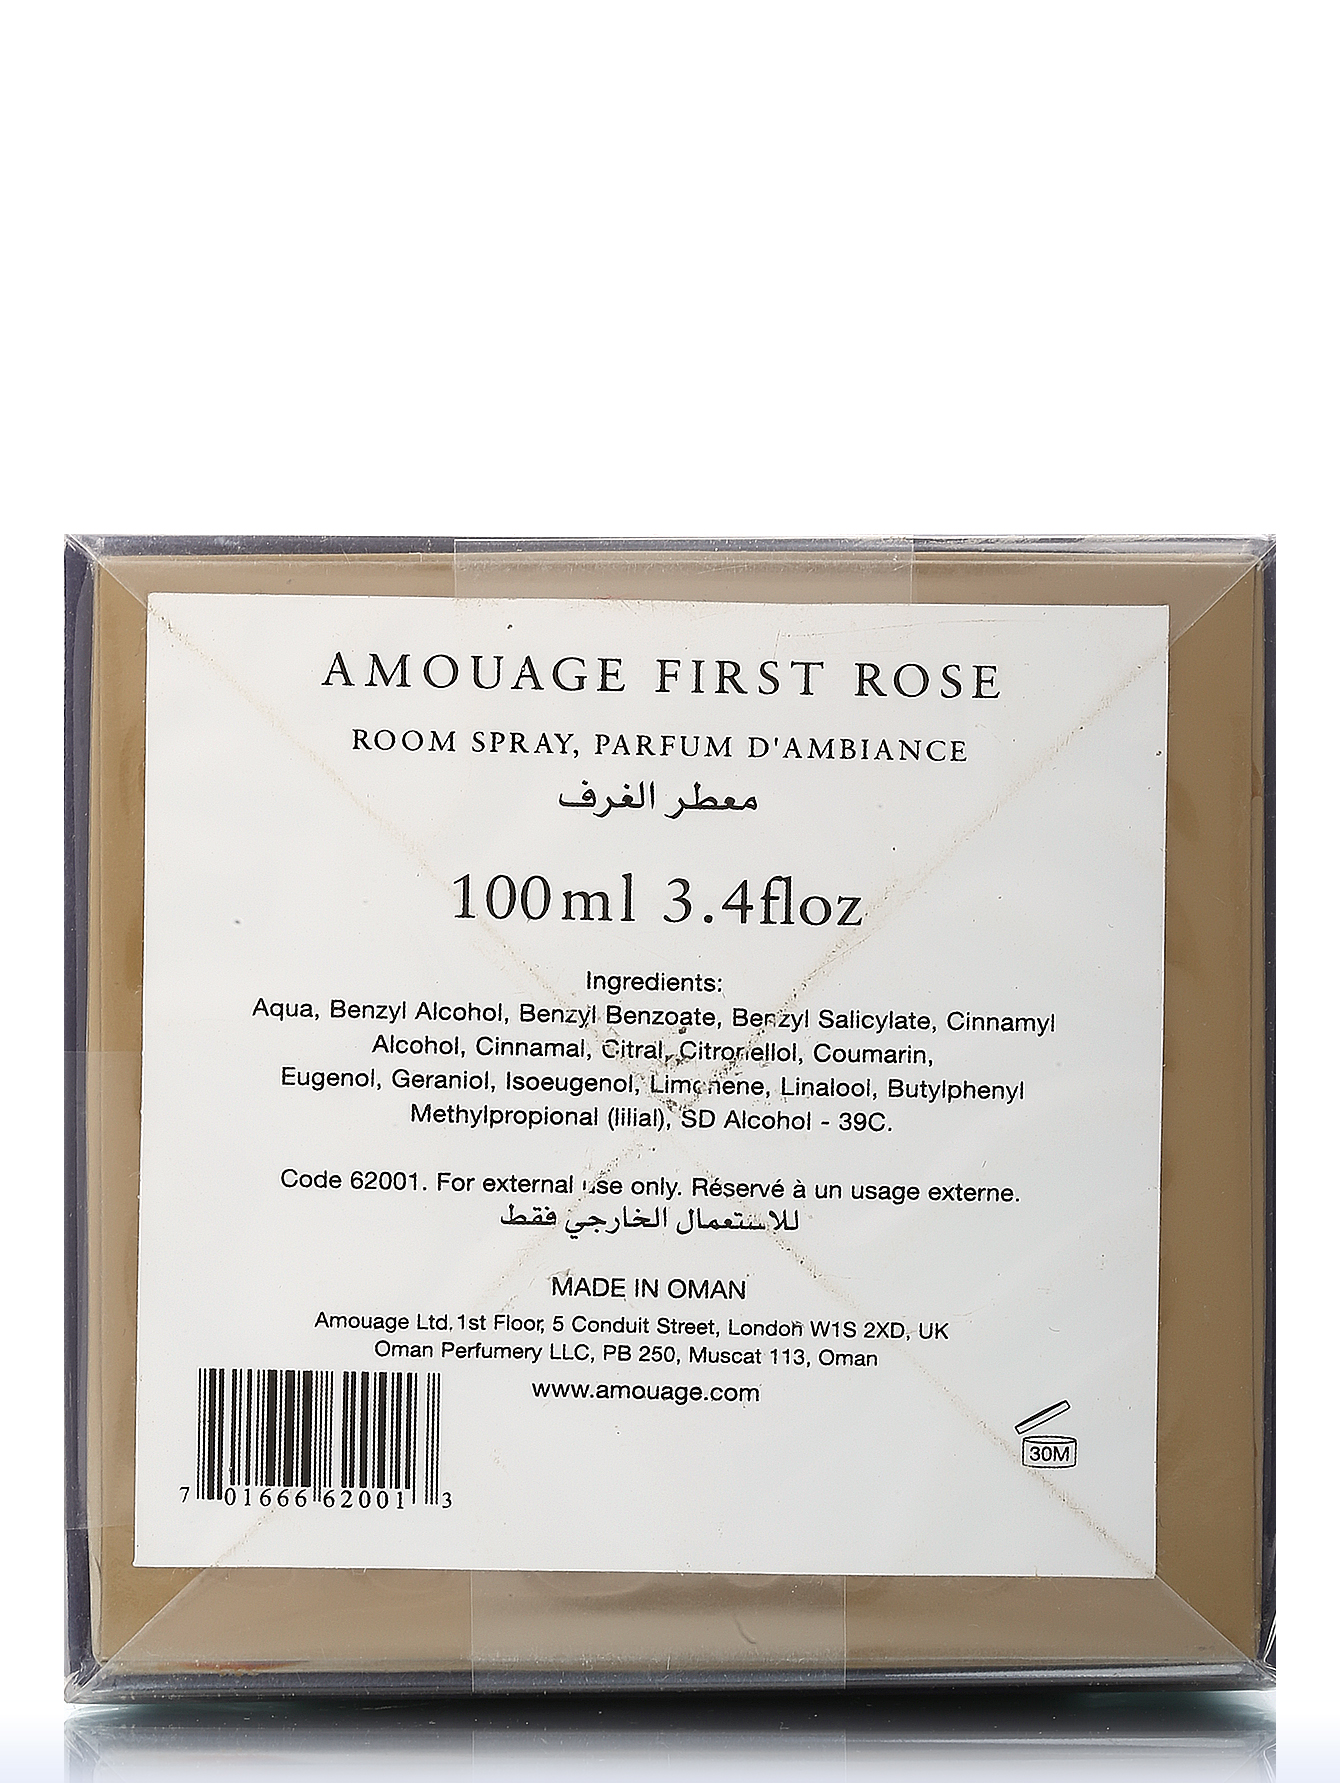 Аромат для дома - First Rose, Amouage Home, 100ml - Модель Верх-Низ